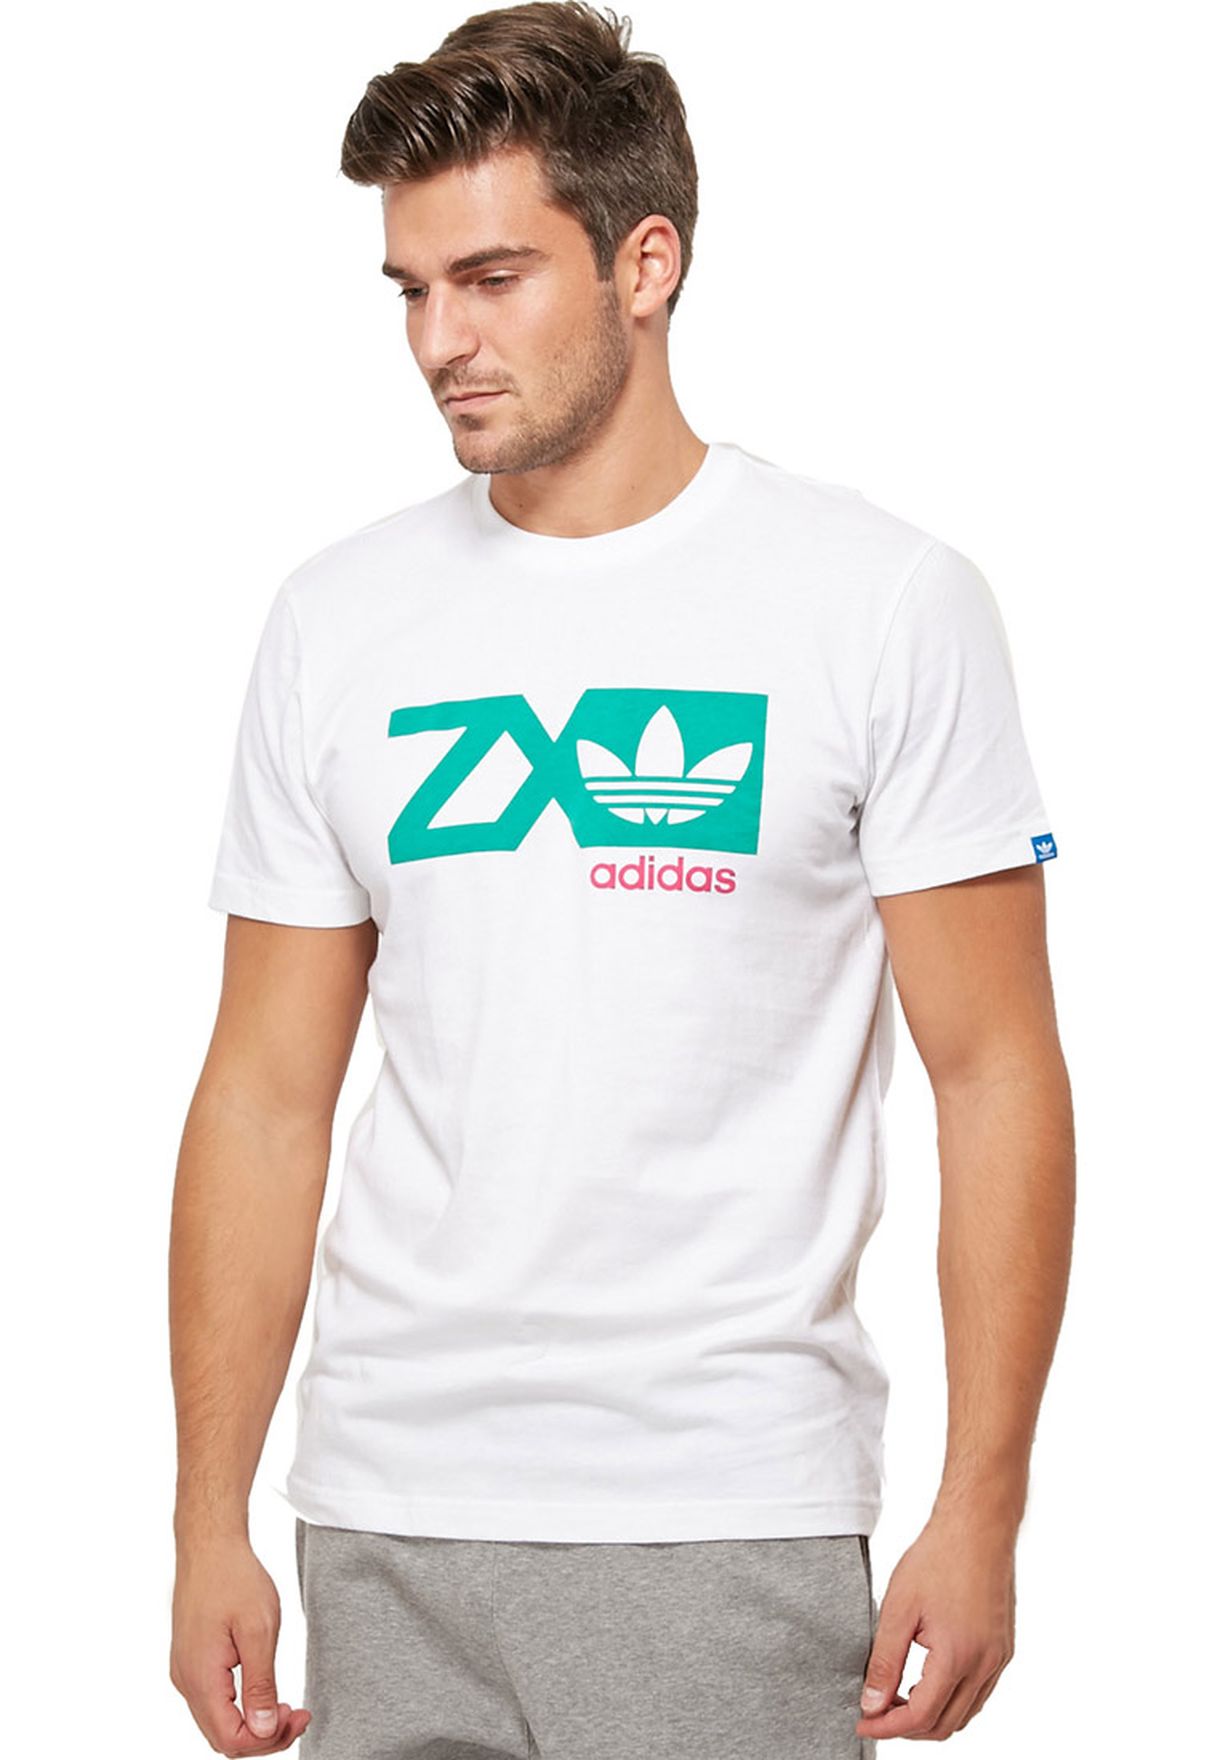 adidas zx t shirt